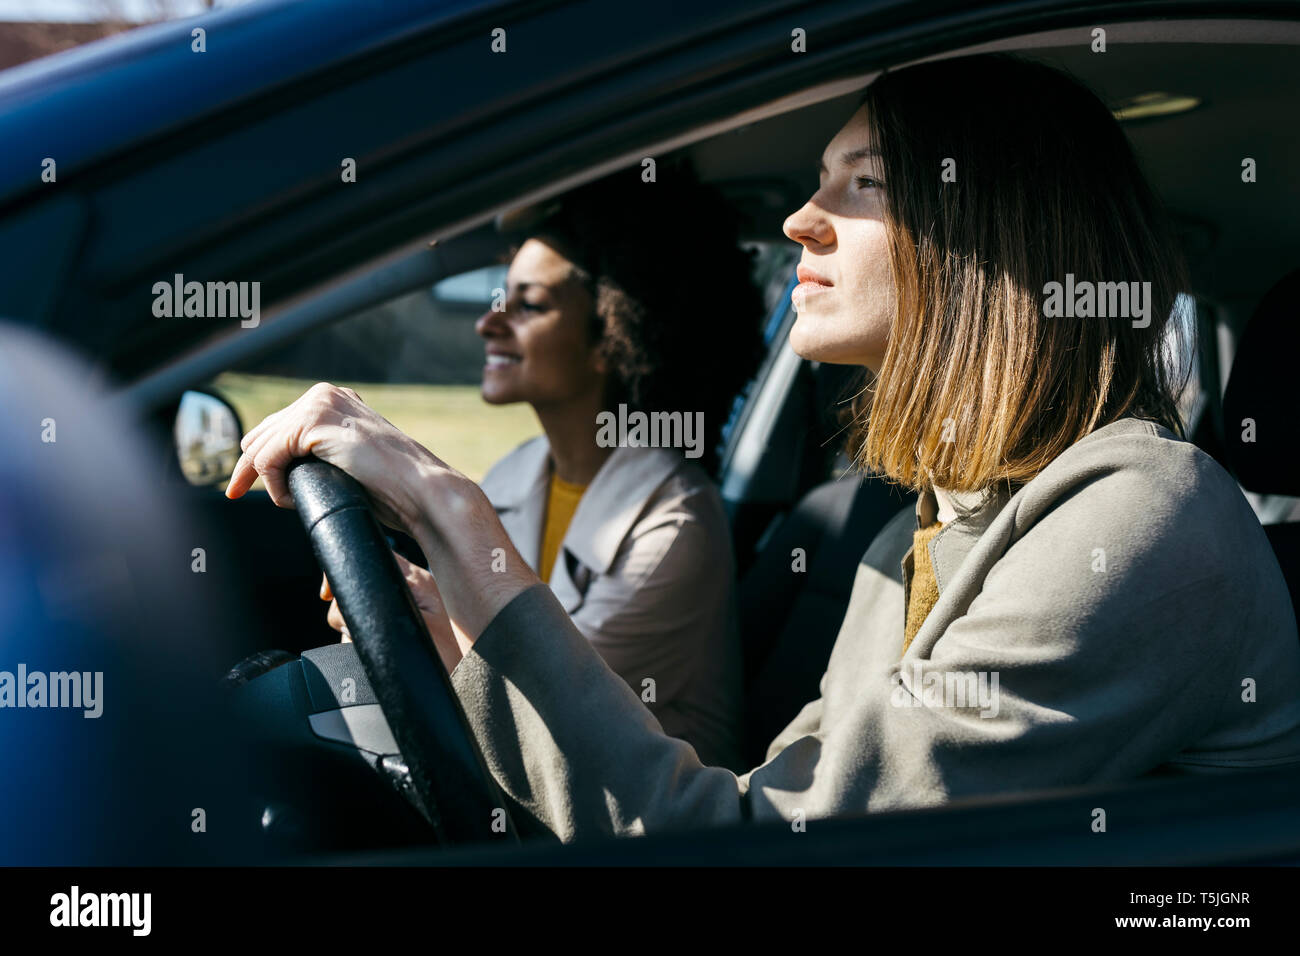 Deux femmes dans une voiture conduite Banque D'Images